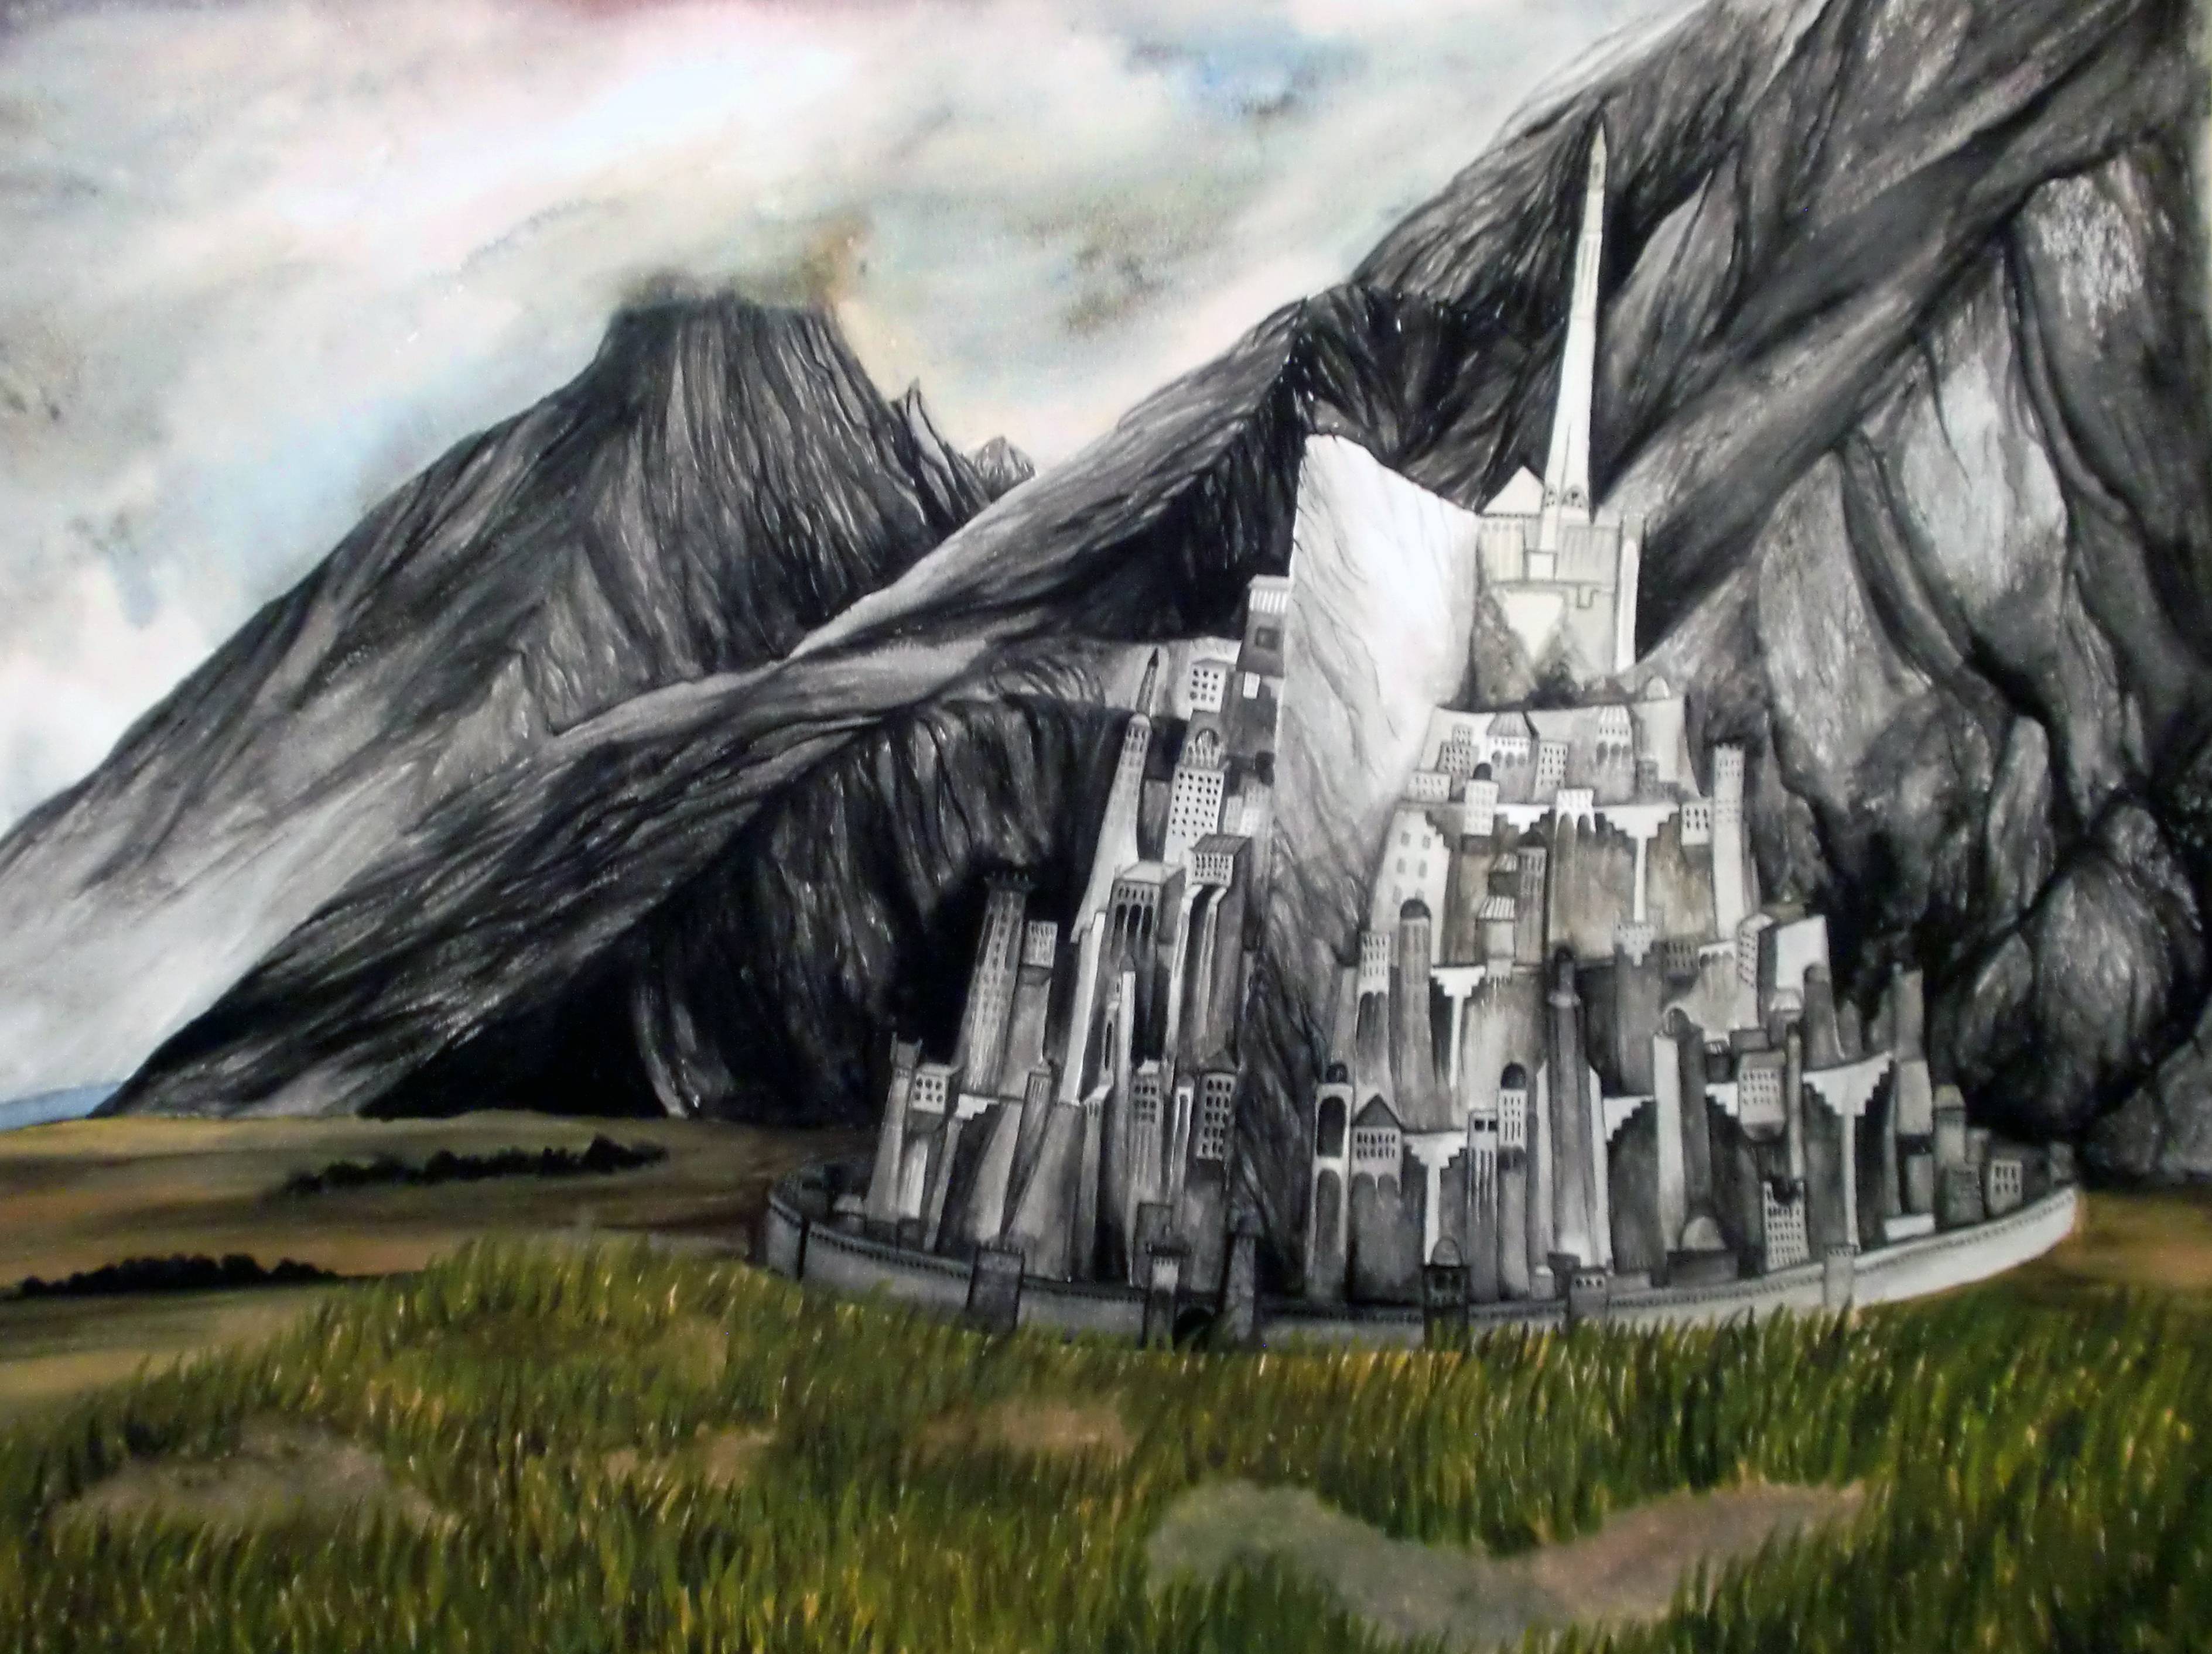 Fondos de pantalla de Minas Tirith. Wallpaper de Minas Tirith